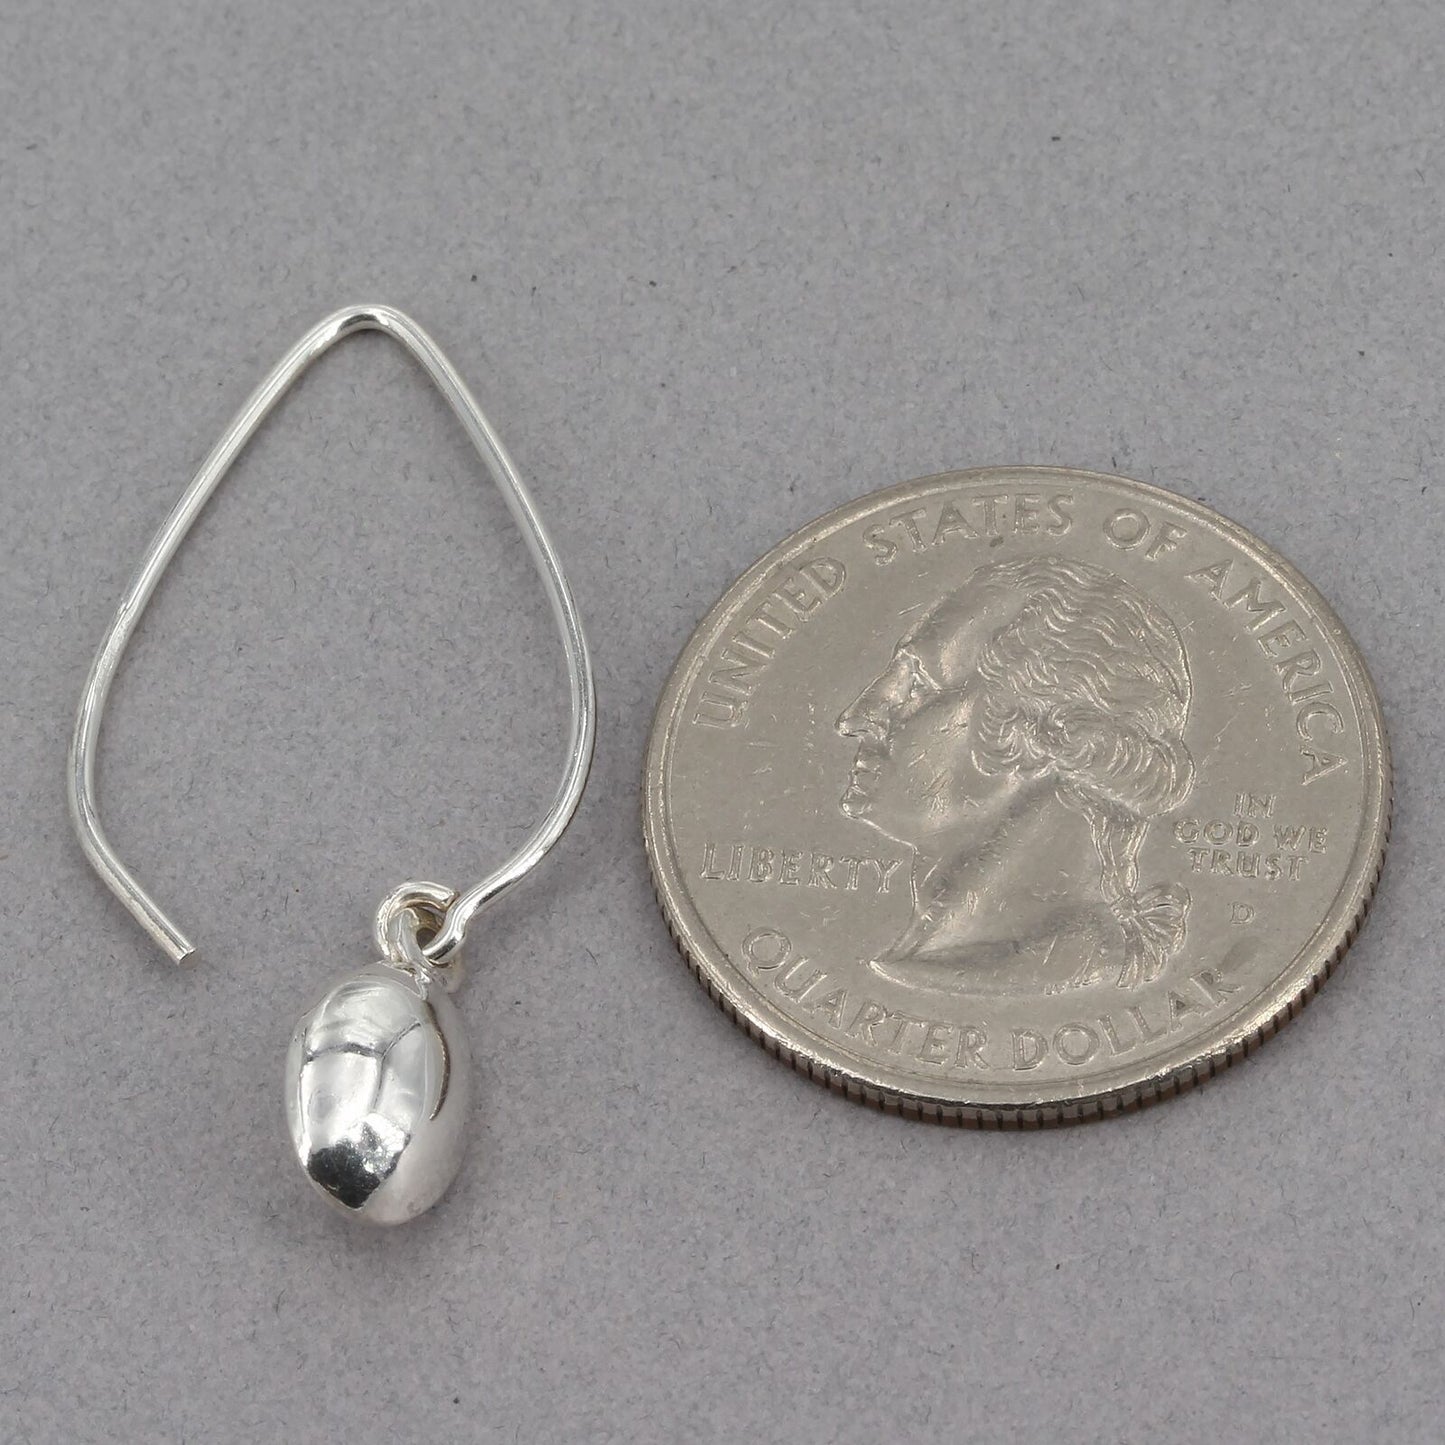 Retired Silpada Sterling Silver Petite Drop Long Wire Dangle Earrings W2032